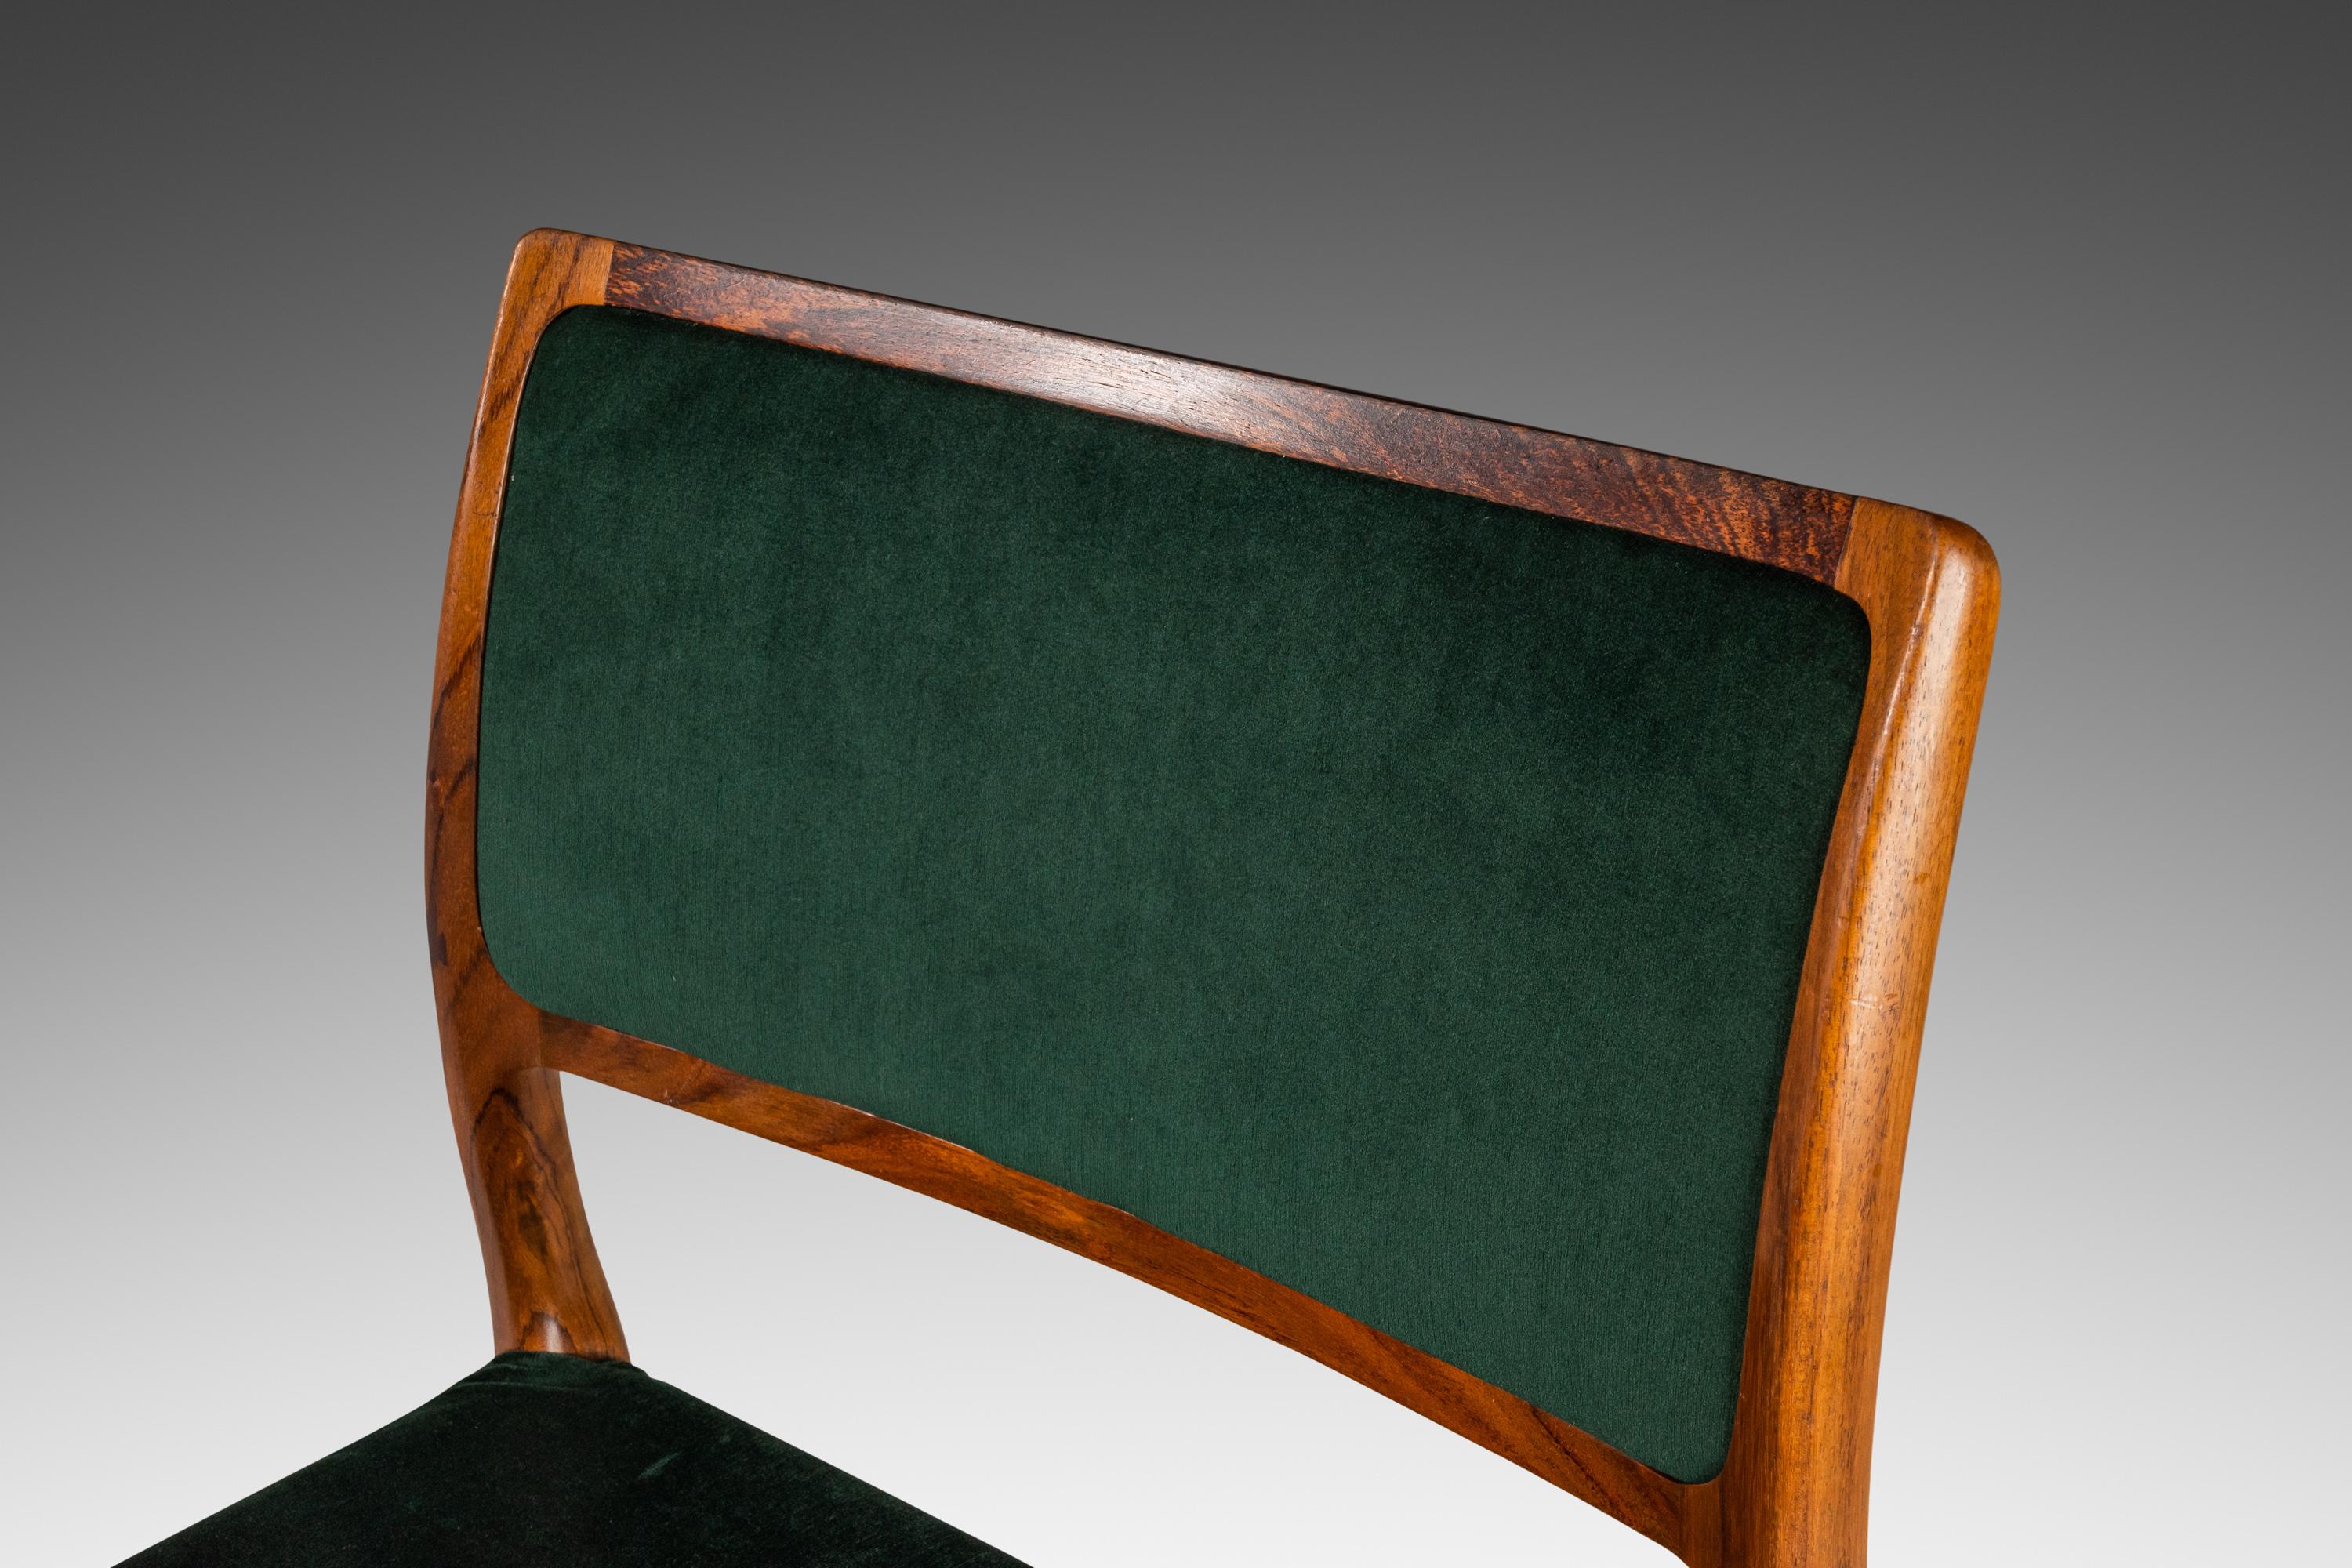 Voici une rare chaise d'appoint modèle 80 conçue par Niels Otto Møller pour I.L.A. Mollers Mobelfabrik, fabriqué dans les années 1960 au Danemark. Cette superbe chaise est fabriquée en palissandre brésilien massif, mettant en valeur la beauté